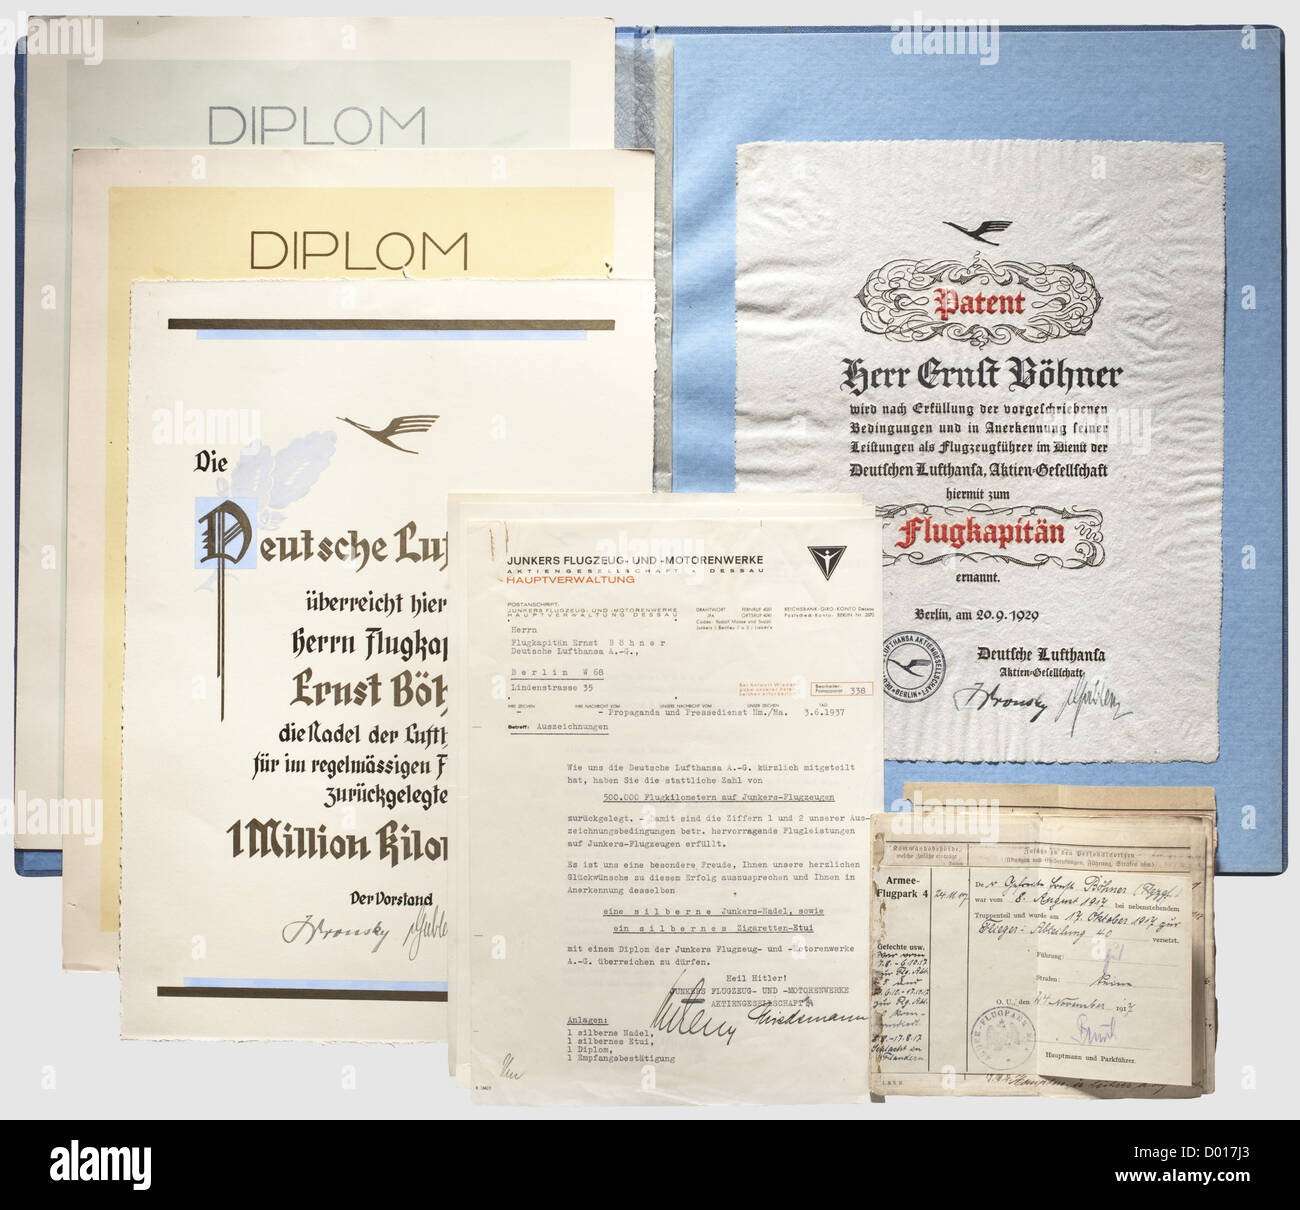 Documents d'un capitaine de vol de Lufthansa allemande, brevet à Flugkapitän en date du 20 septembre 1929 et document pour l'insigne de Lufthansa pour plus d'un million de kilomètres de vol en date du 9 avril 1935, chacun sur papier fait à la main avec texte en noir et rouge.inclus un dossier de récompense bleu avec une grue estampée or,un décoratif Document pour l'épinglette Lufthansa de plus d'un million de kilomètres daté du 10 avril 1935 et deux diplômes de l'usine de Junkers de plus de 500,000 et 750,000 kilomètres couverts dans les avions Junkers, avec meilleurs voeux et transmission, droits supplémentaires-Clearences-non disponible Banque D'Images